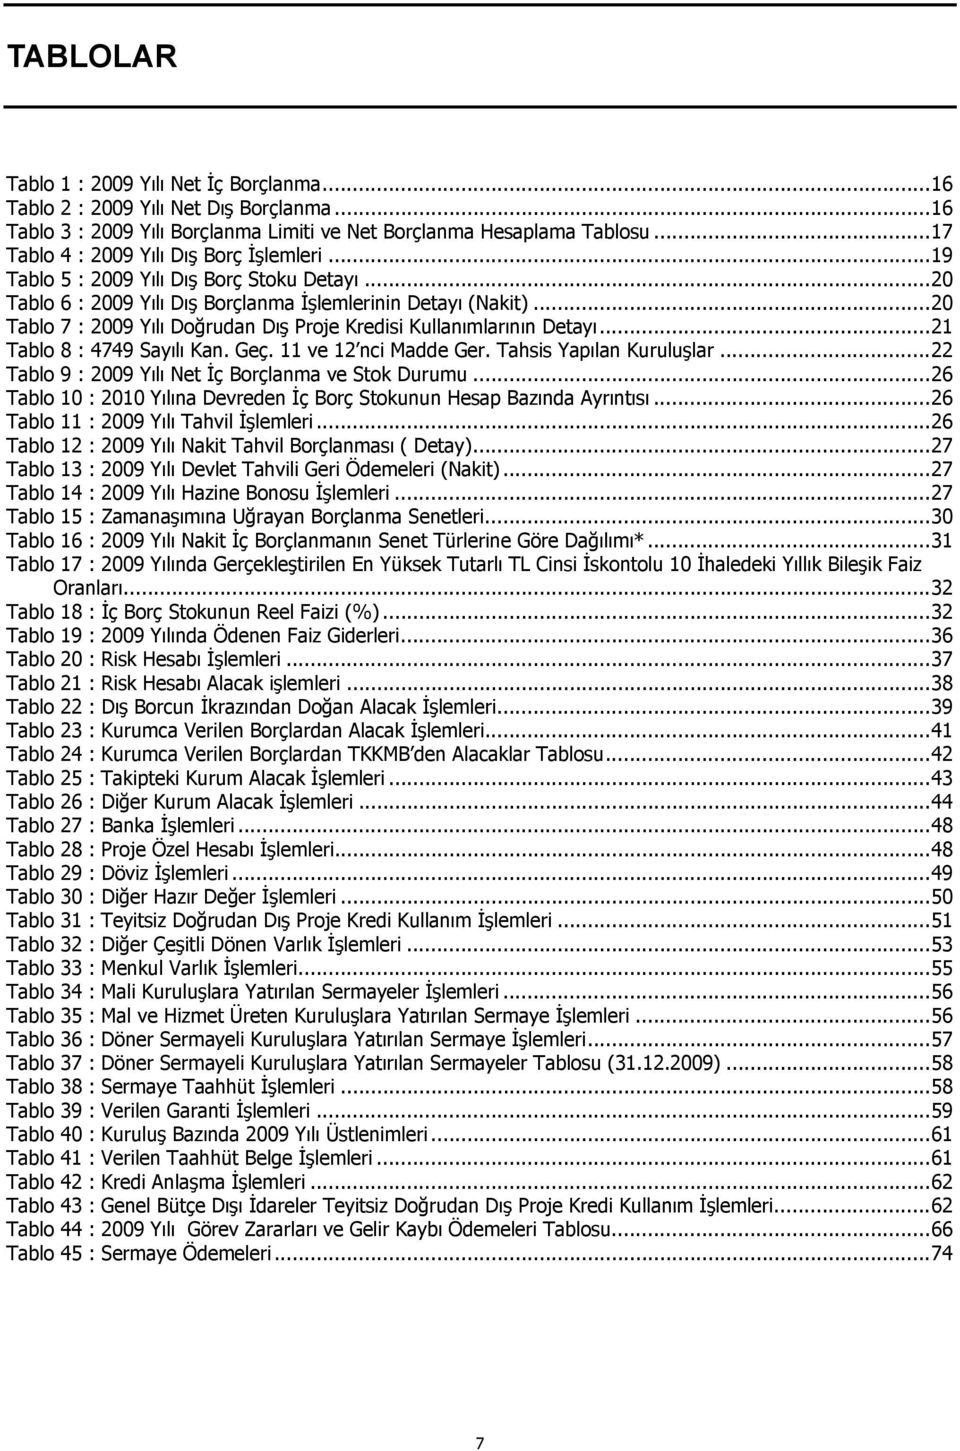 .. 20 Tablo 7 : 2009 Yılı Doğrudan Dış Proje Kredisi Kullanımlarının Detayı... 21 Tablo 8 : 4749 Sayılı Kan. Geç. 11 ve 12 nci Madde Ger. Tahsis Yapılan Kuruluşlar.